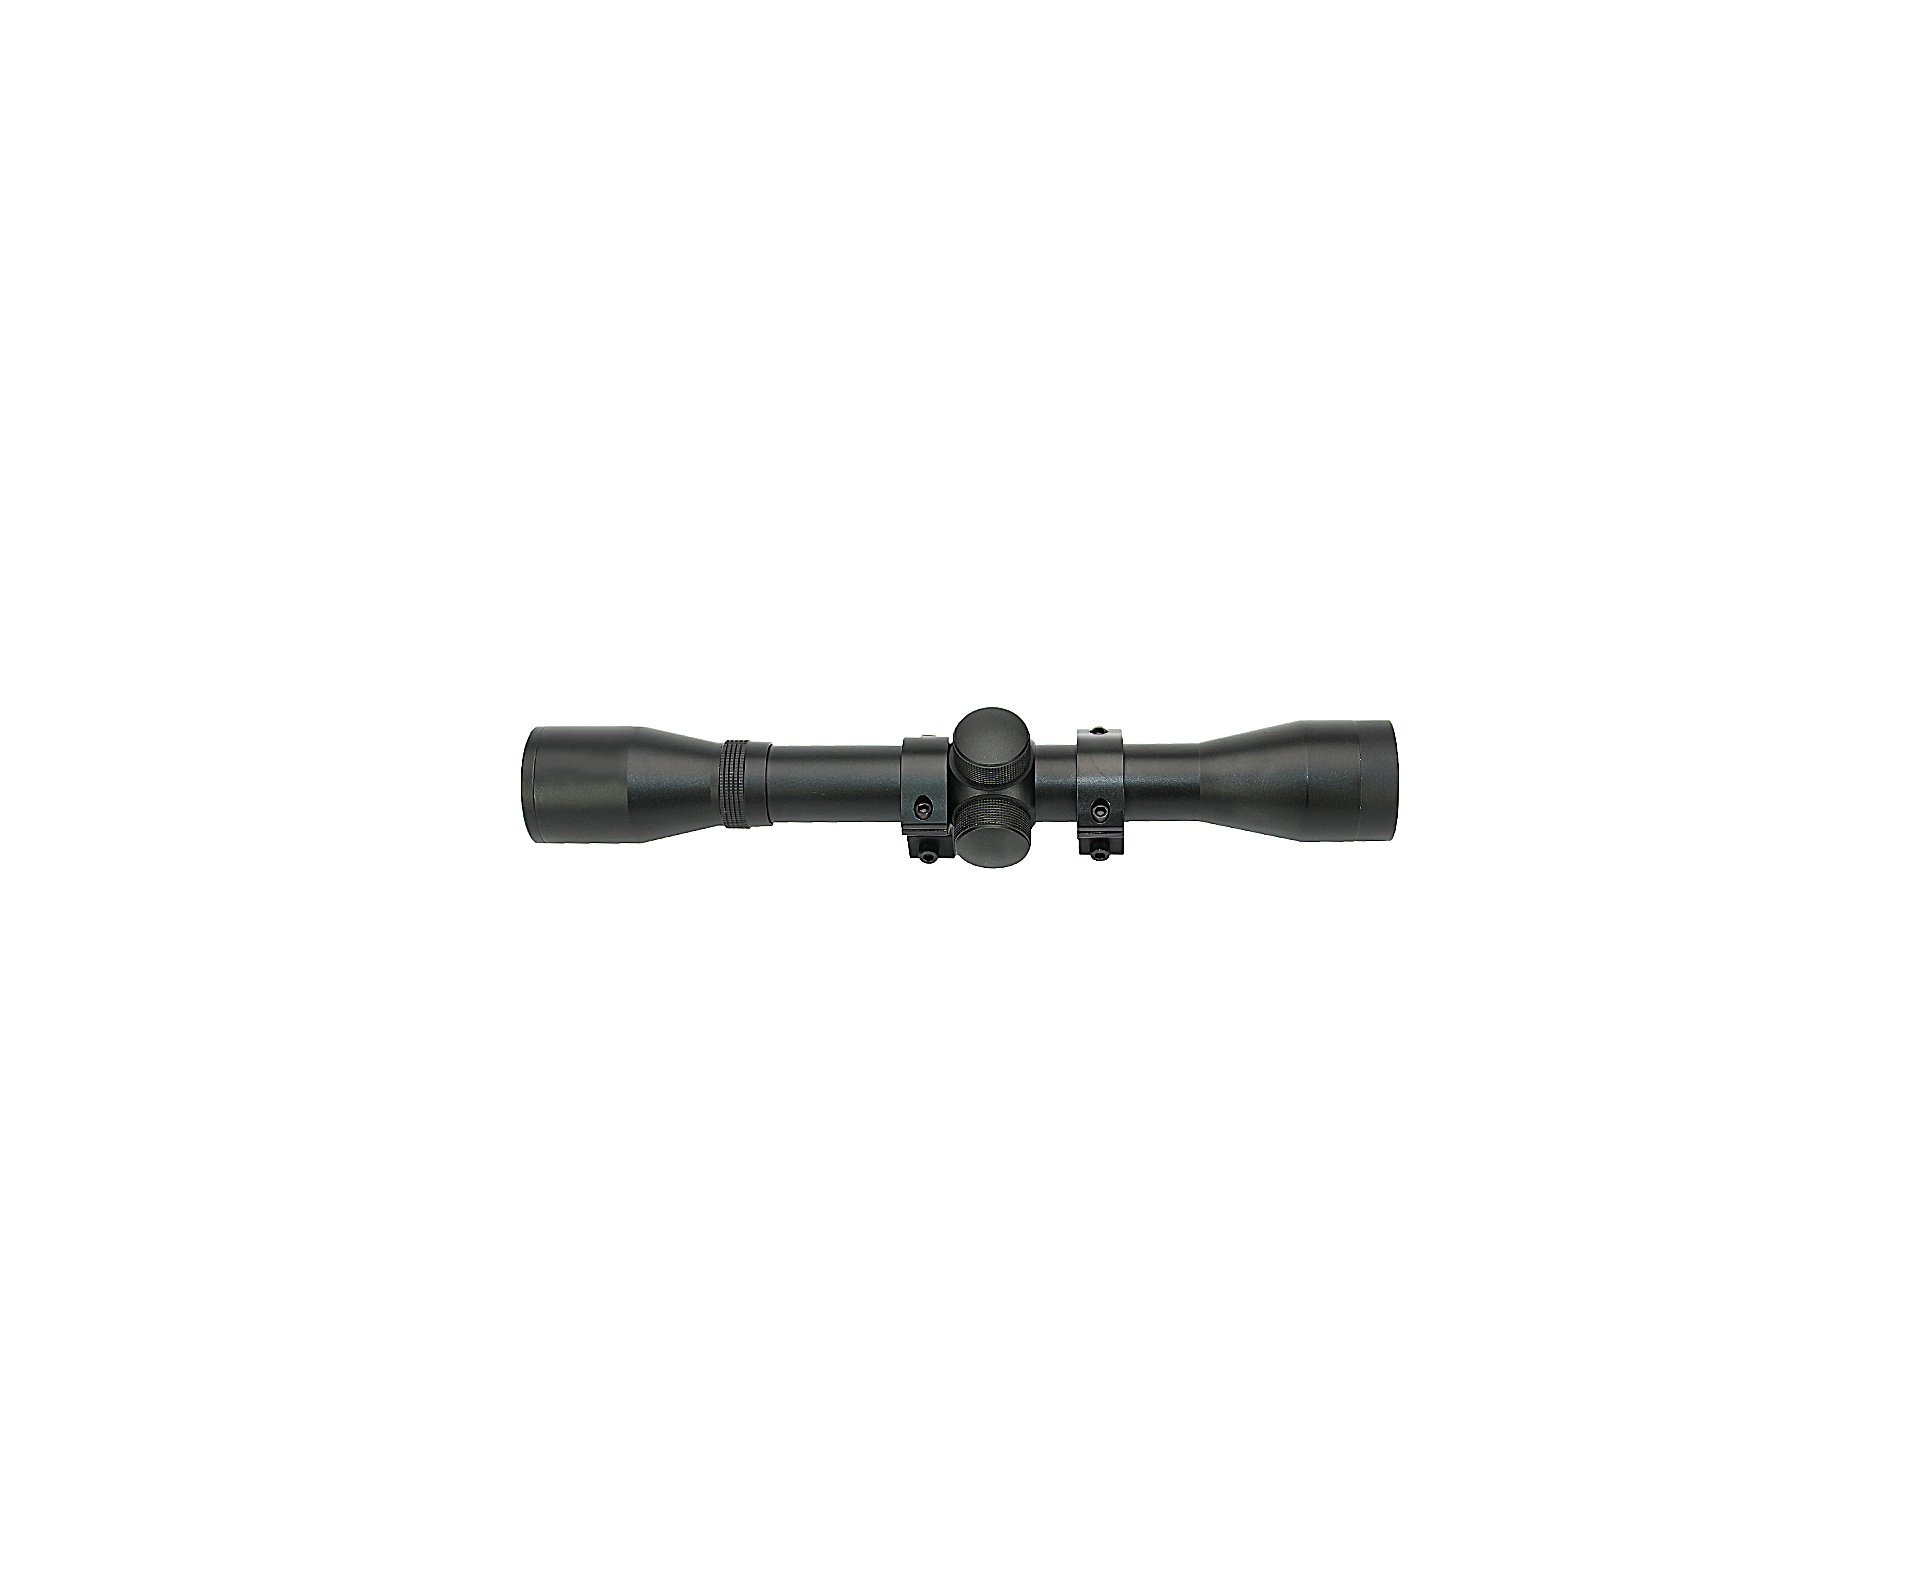 Carabina De Pressão Hatsan Ht87 Sas Combo Especial - Cal 5,5mm + Pistão Pneumático + Luneta 4x32 + Chumbinho + Case + Alvo